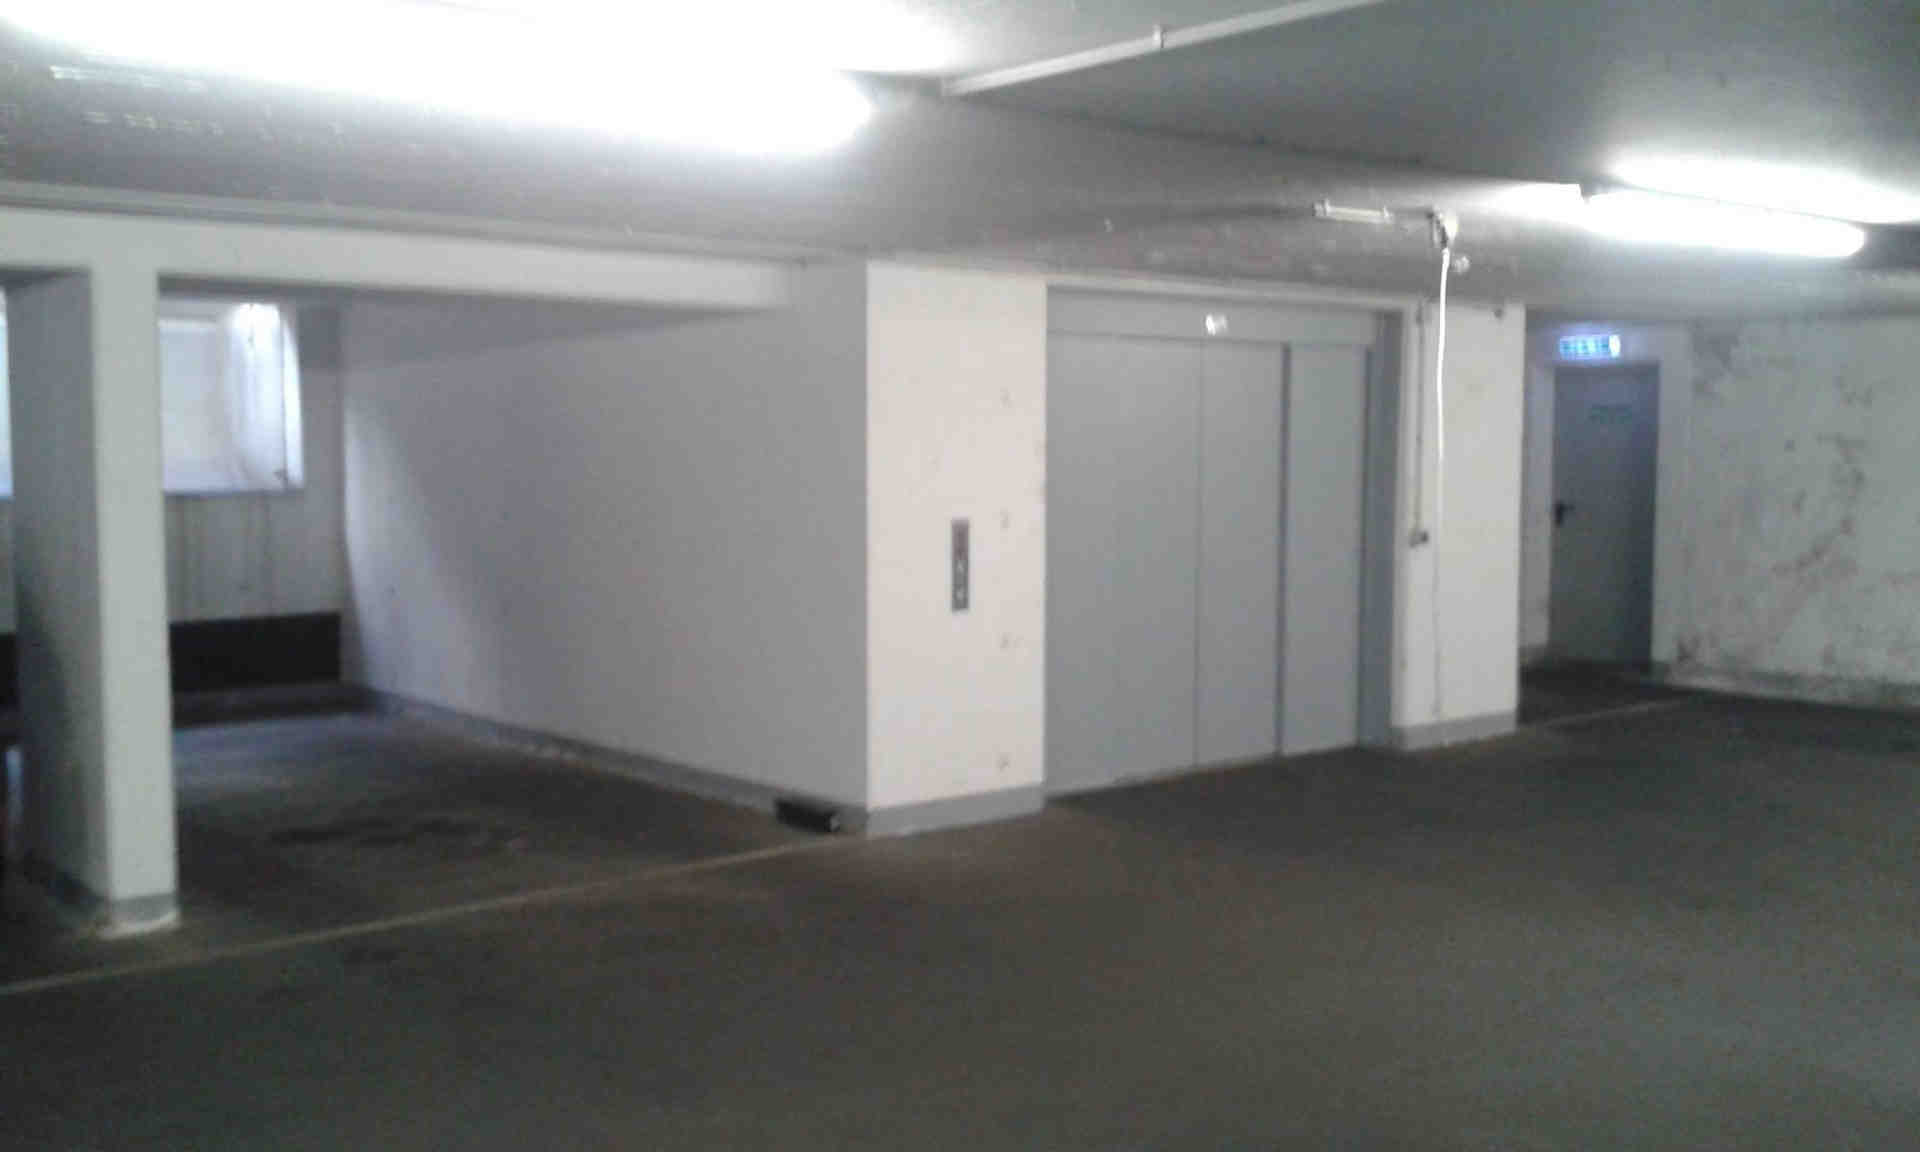 Парковка/гараж у підвалі в центрі Кельна (Zülpi/Barba) - Mauritiuswall, 50676 Кельн - Фото 2 з 3